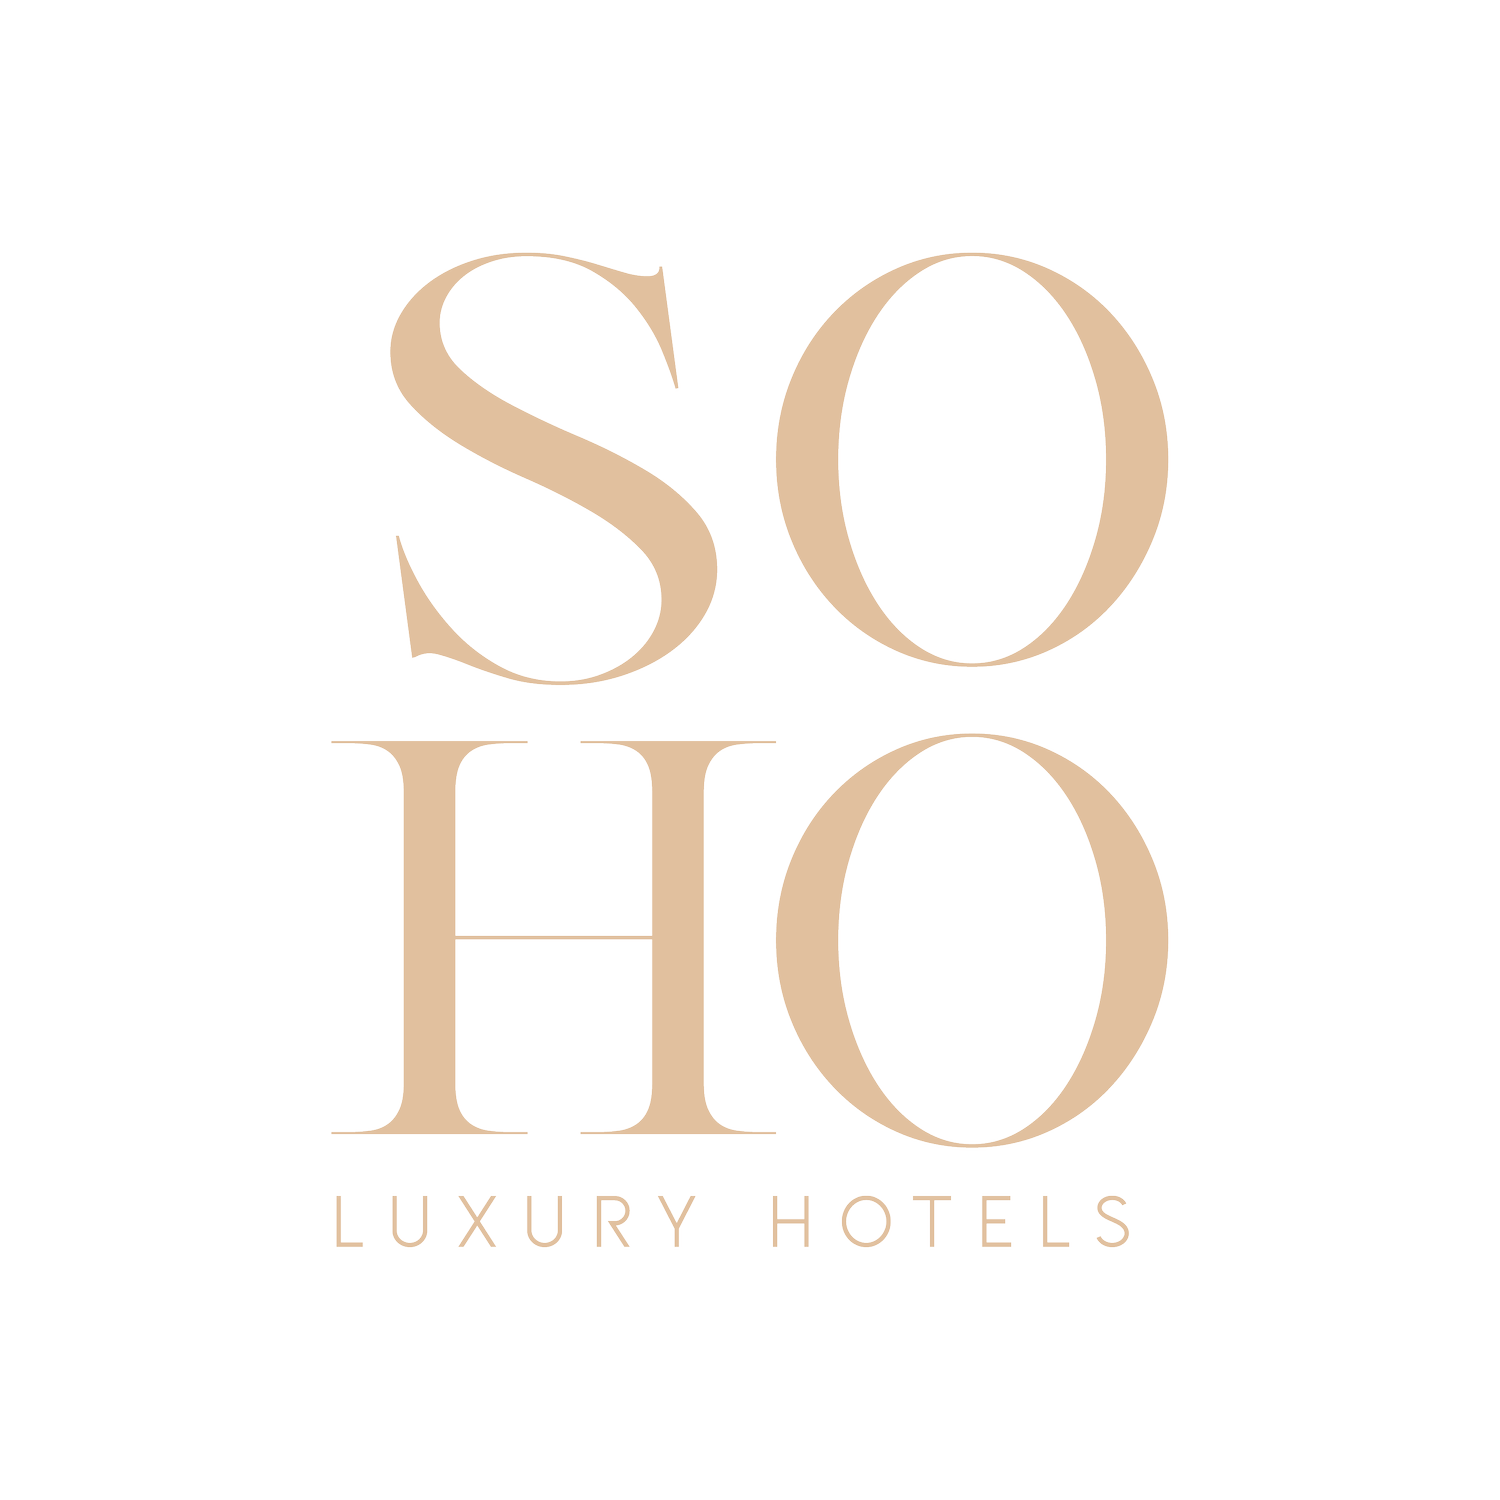 SOHO HOTELS